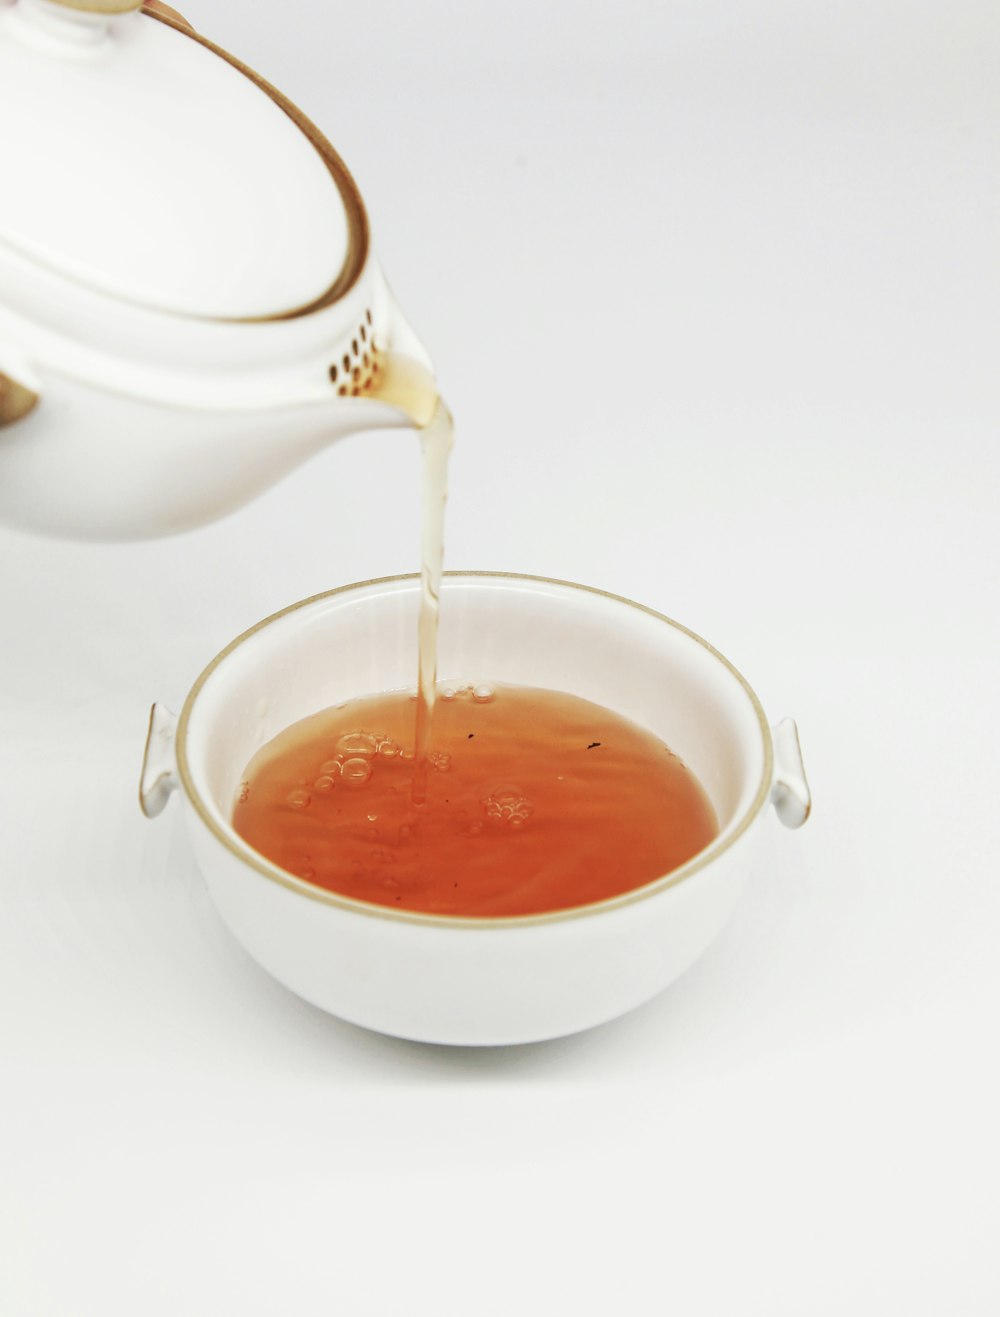 il tè si versa nella tazza da tè bianca